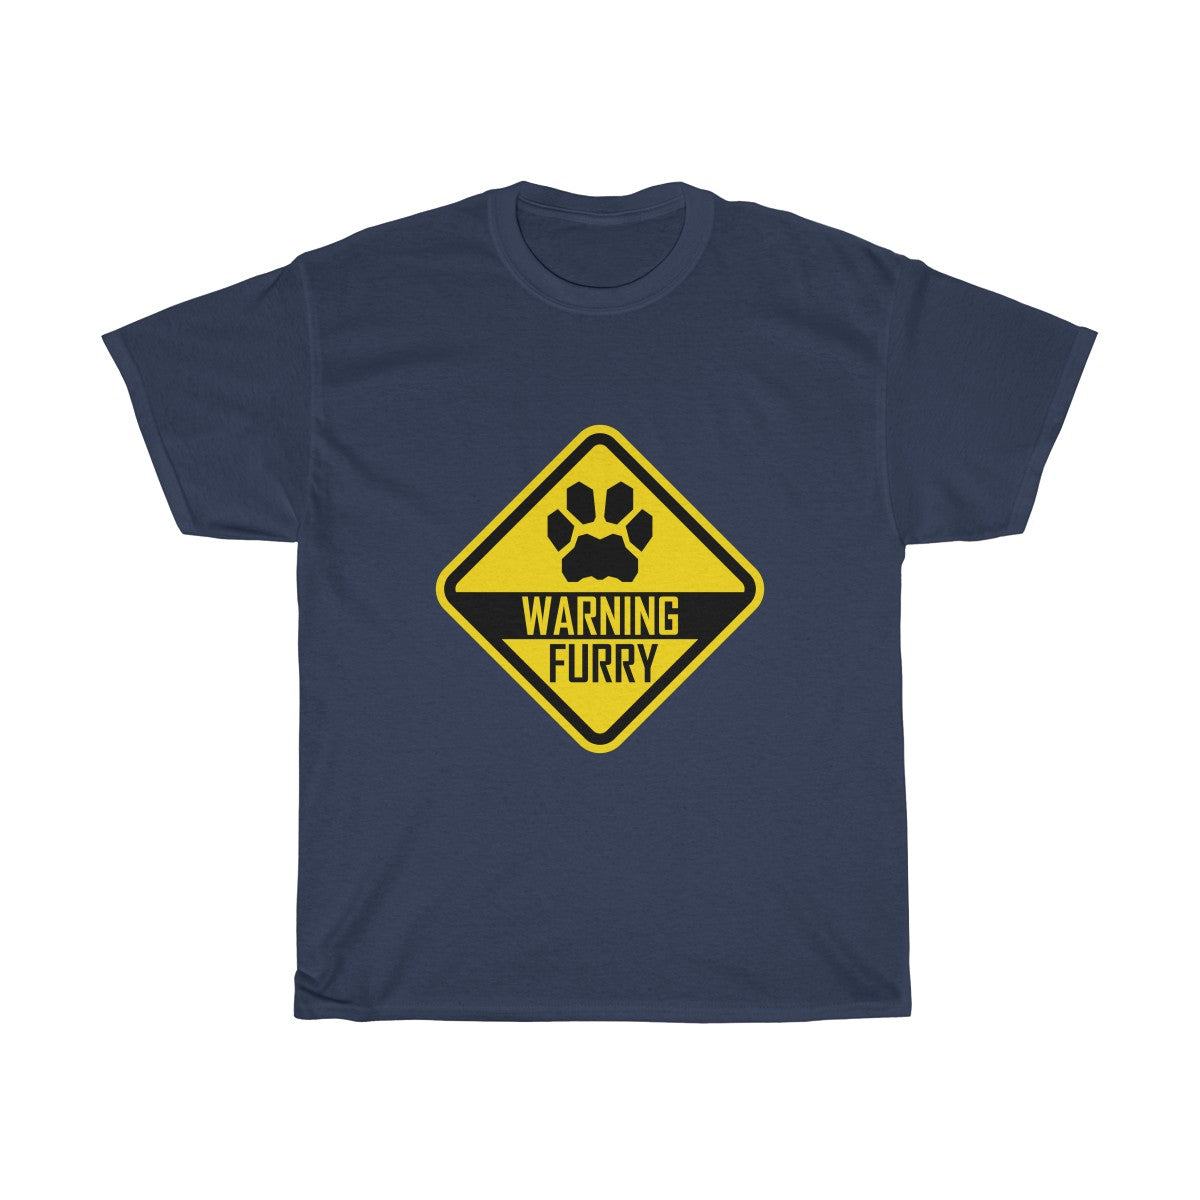 Warning Feline - T-Shirt T-Shirt Wexon Navy Blue S 